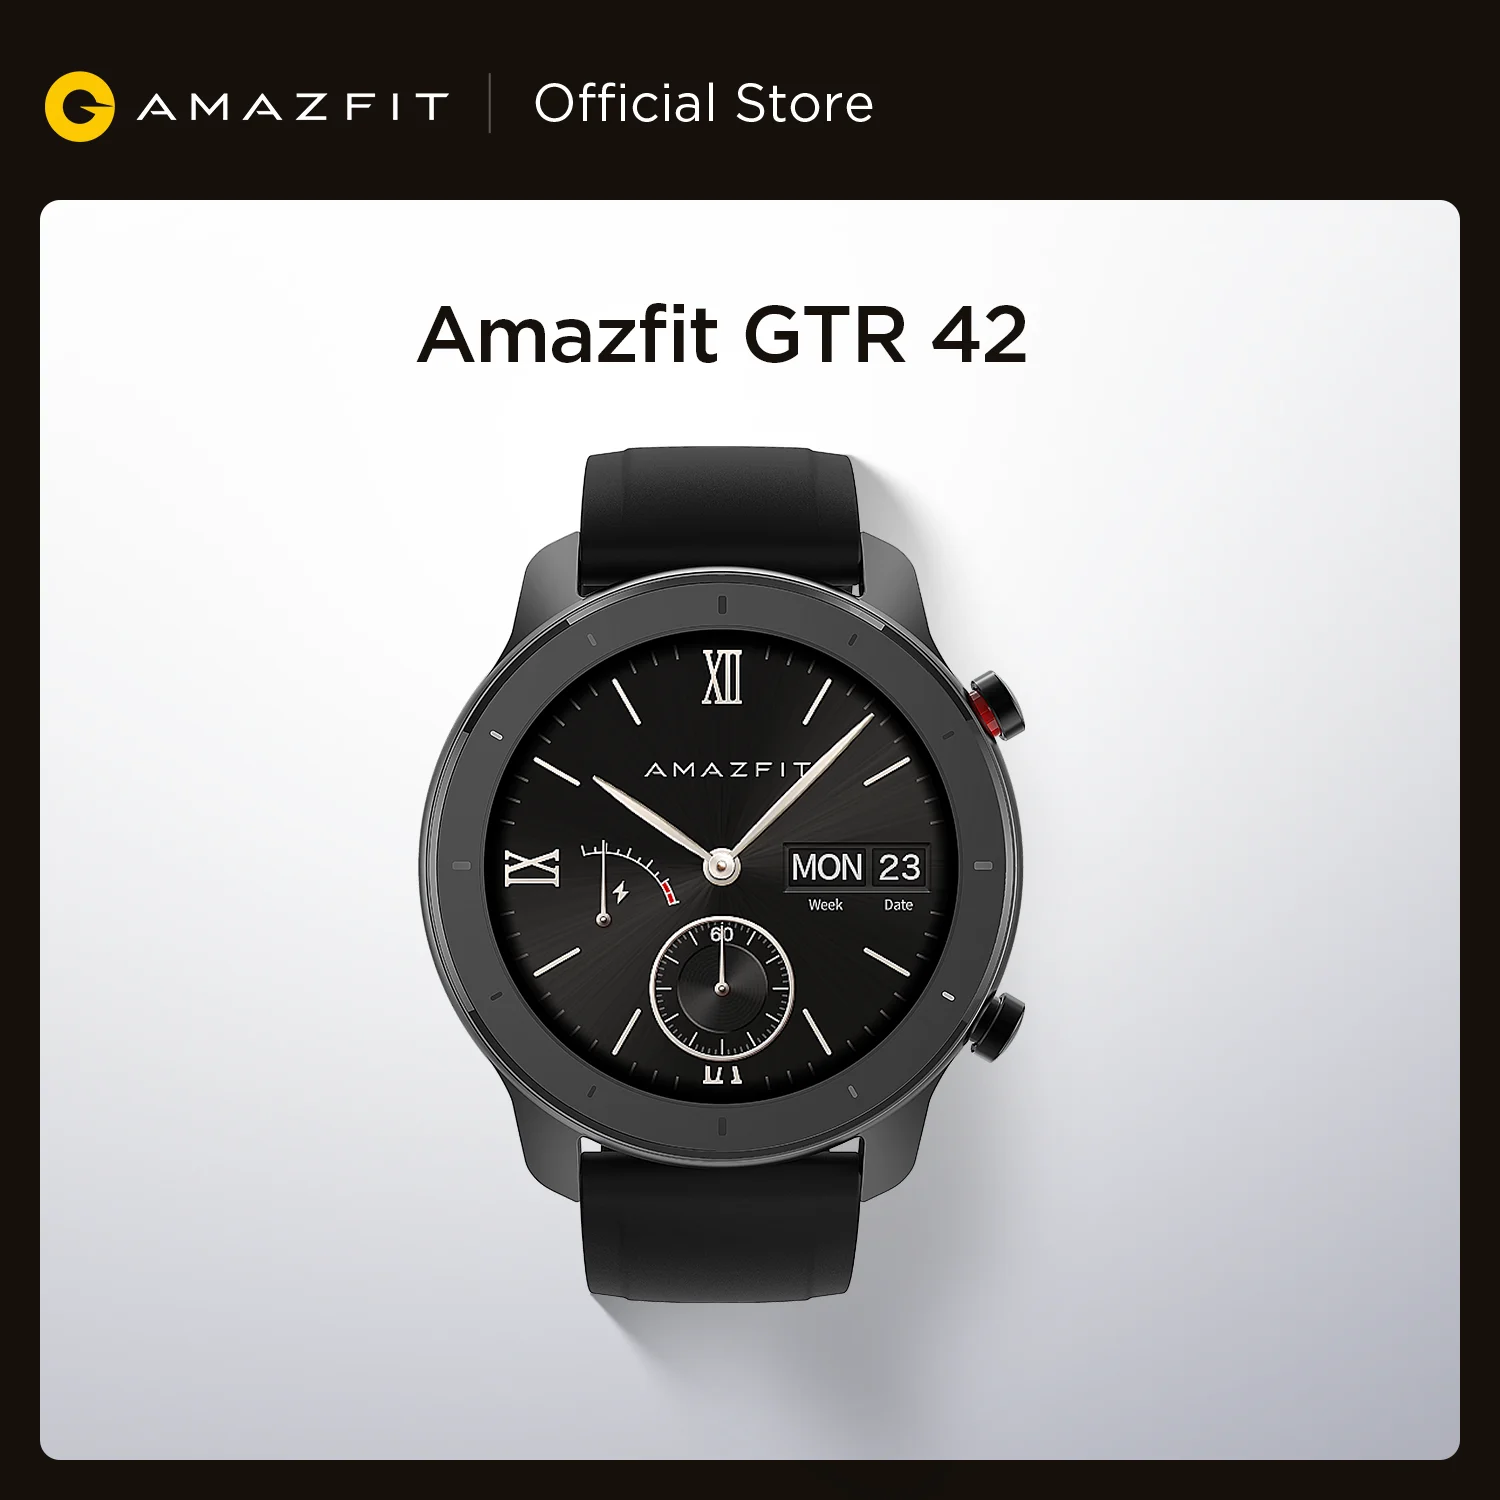  Amazfit GTR 42 мм умные часы 5ATM умные часы 12 дней батарейный контроль музыки для Android IOS  